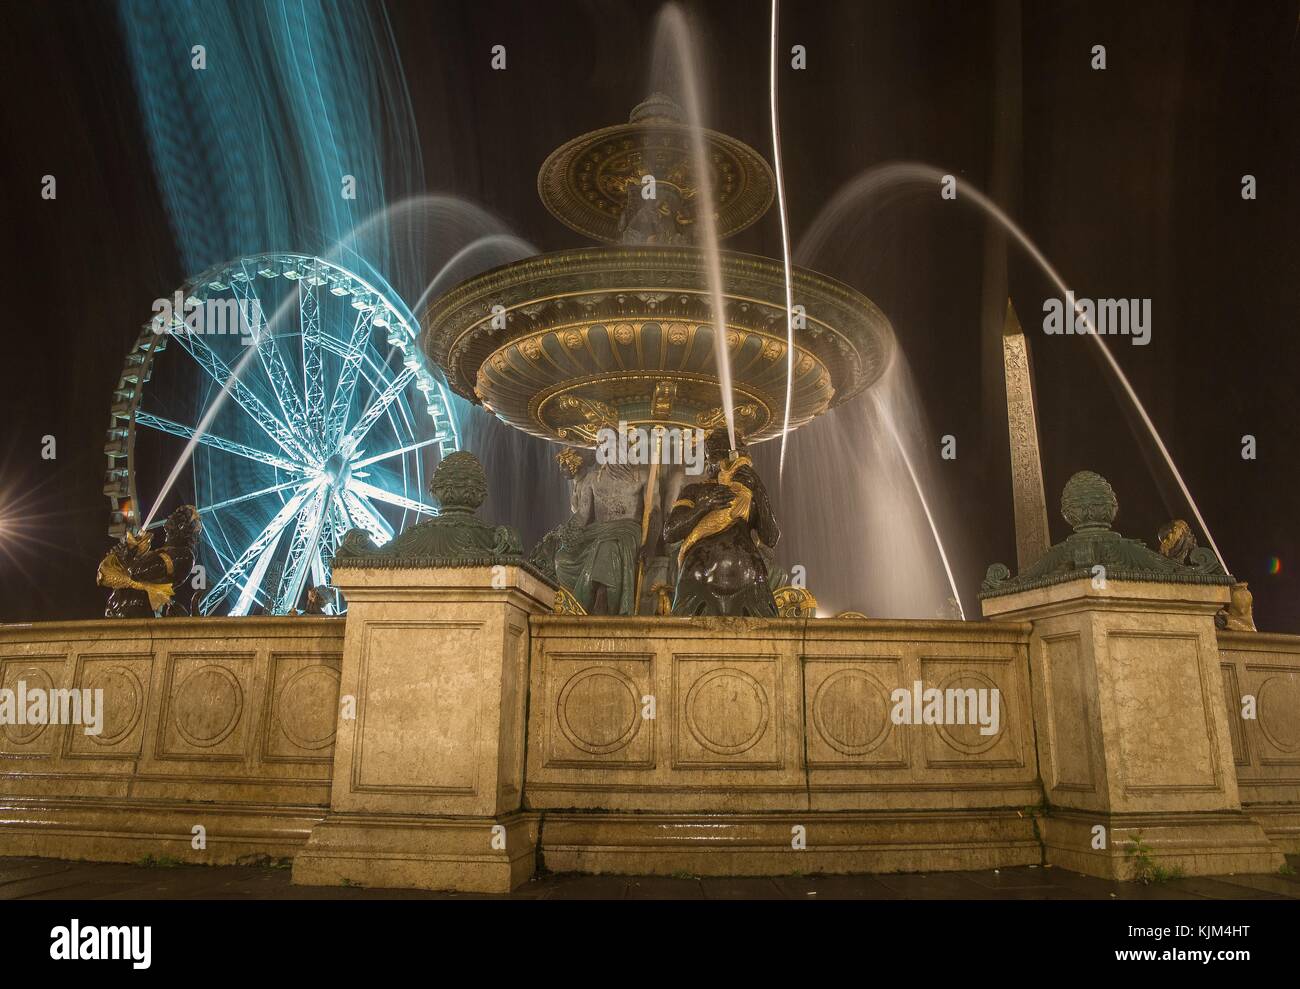 Partie de la ville - 22/11/2012 - - Fontaines de la Concorde, la fontaine des rivières vue nocturne. - Sylvain Leser / le Pictorium Banque D'Images